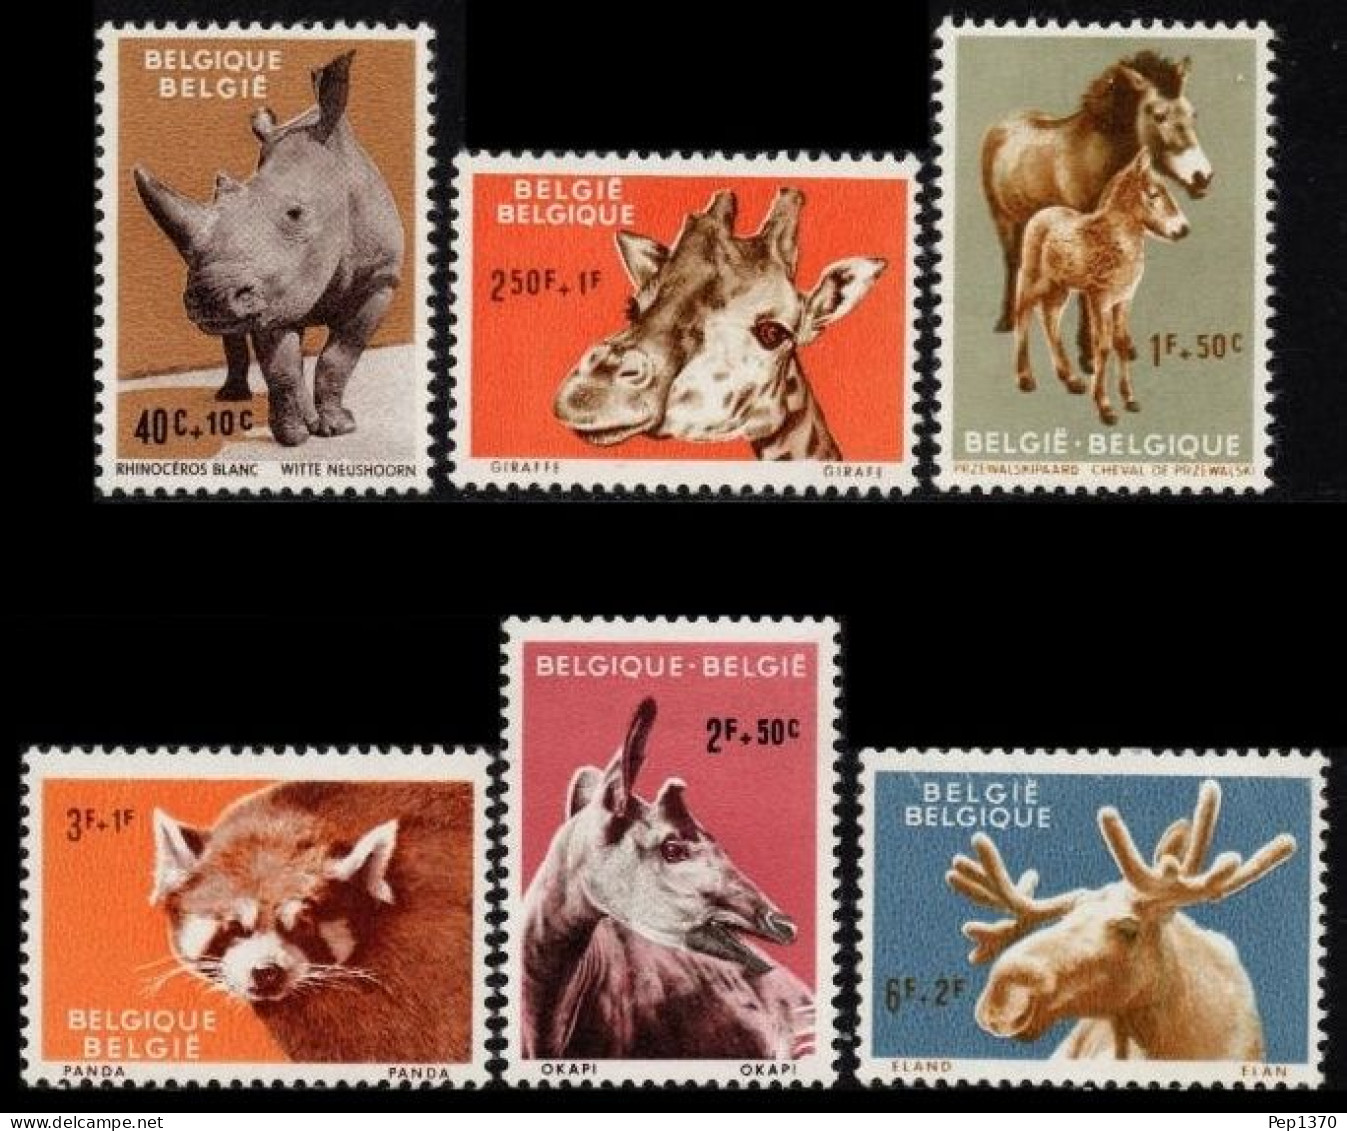 BELGICA 1961 - BELGIQUE - BELGIUM - FAUNA ZOOLOGICO DE AMBERES - ANVERS - YVERT Nº 1182/1187** - Unused Stamps